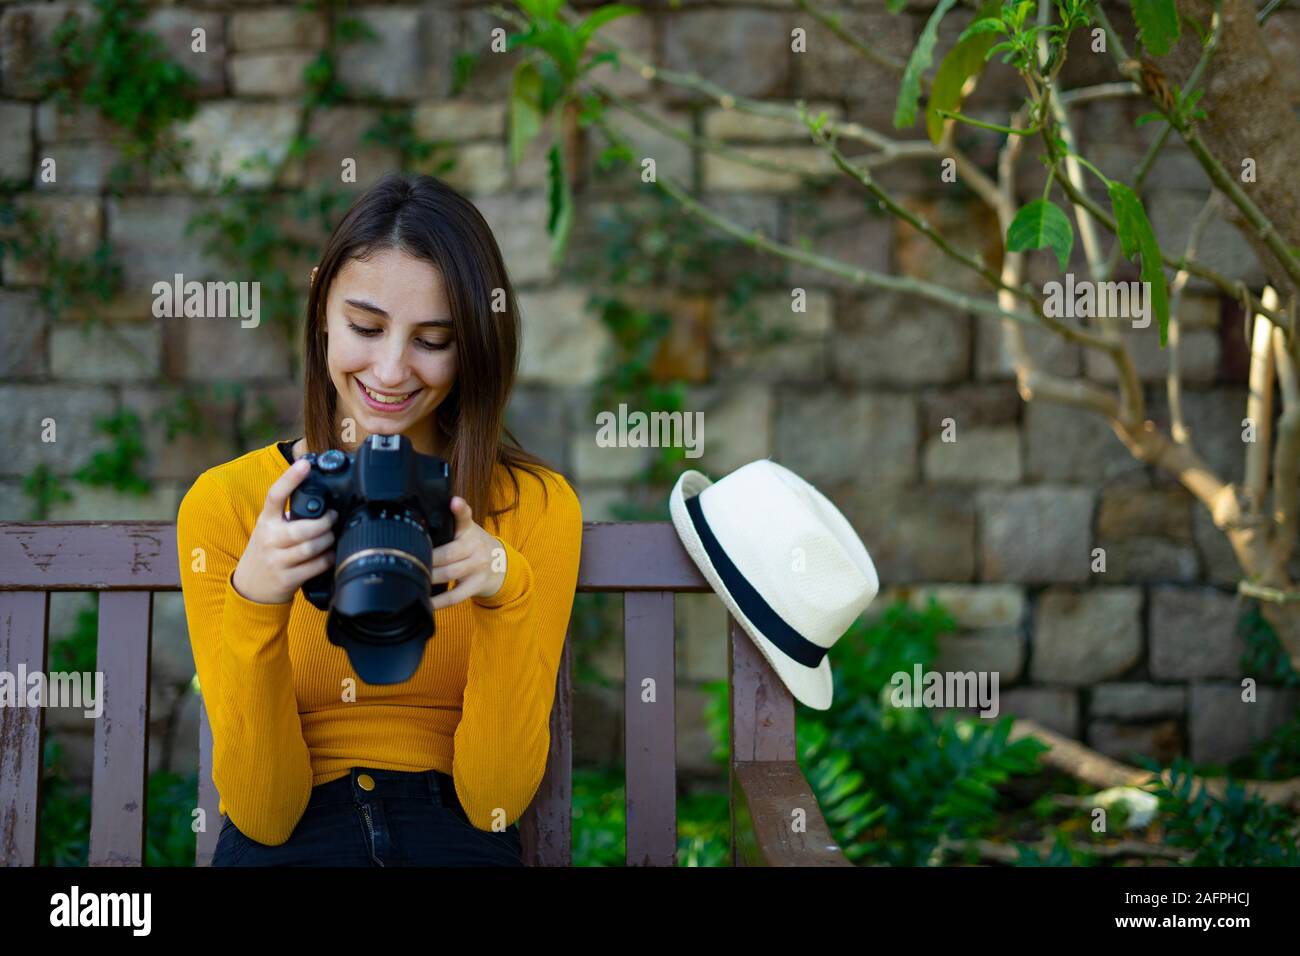 Fotograf Frau suchen und Ihre Fotos Überprüfung auf der Spiegelreflexkamera. Outdoor Fotografie session Konzept. Stockfoto